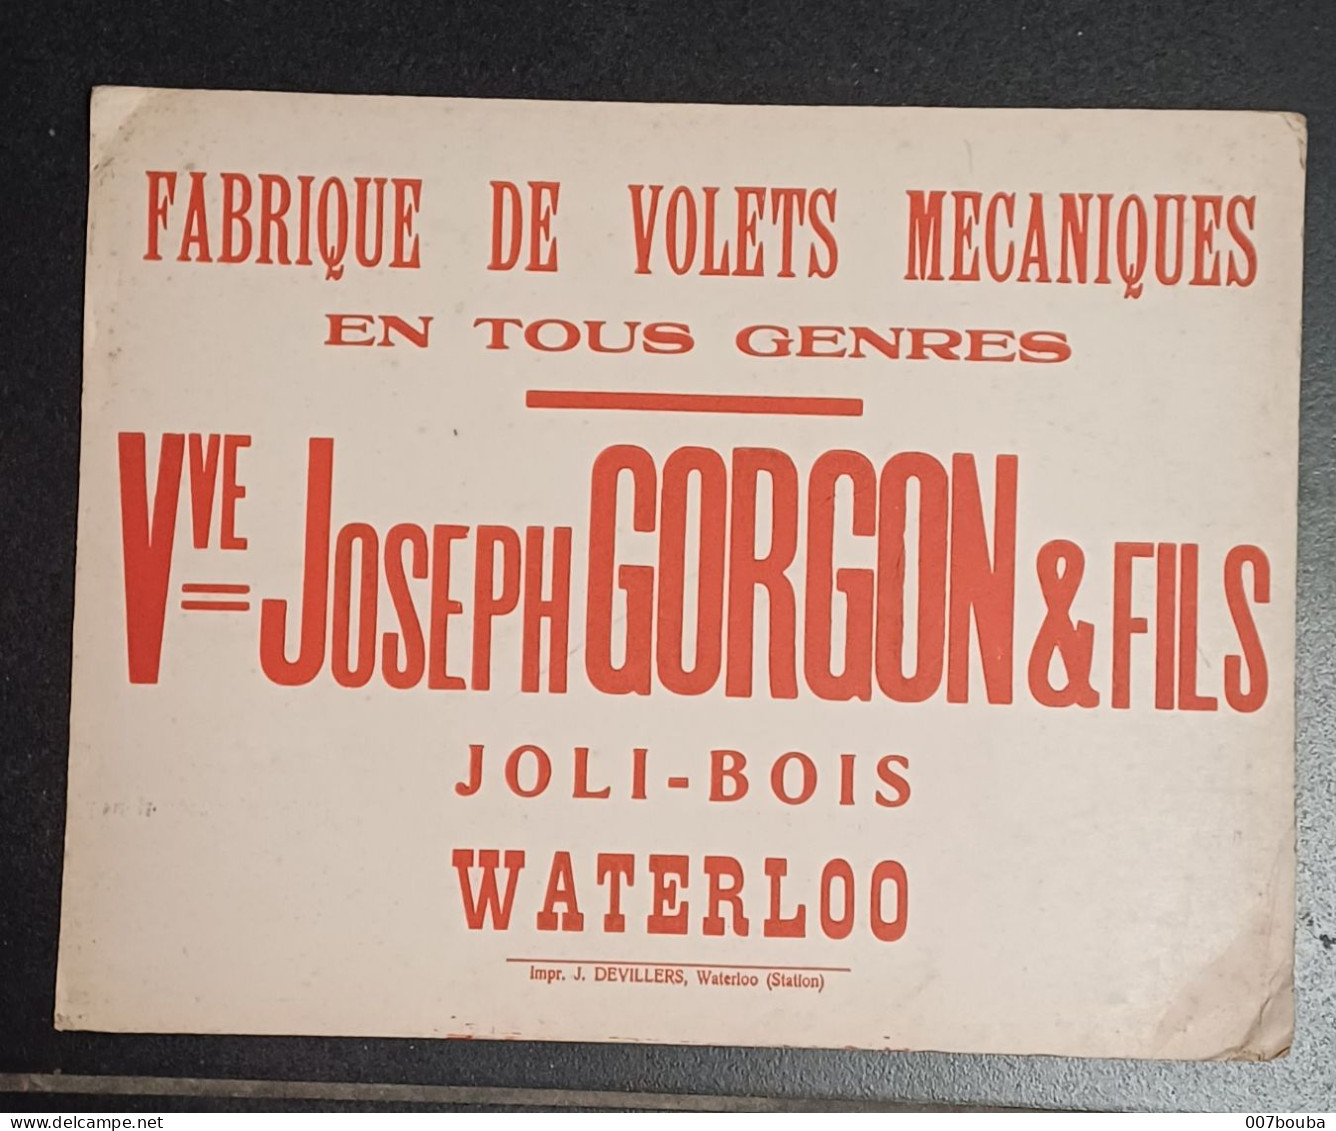 WATERLOO JOLI-BOIS / Vve JOSEPH GORGON & FILS _ FABRIQUE DE VOLETS MÉCANIQUES / FORMAT 30x25cm - Pappschilder